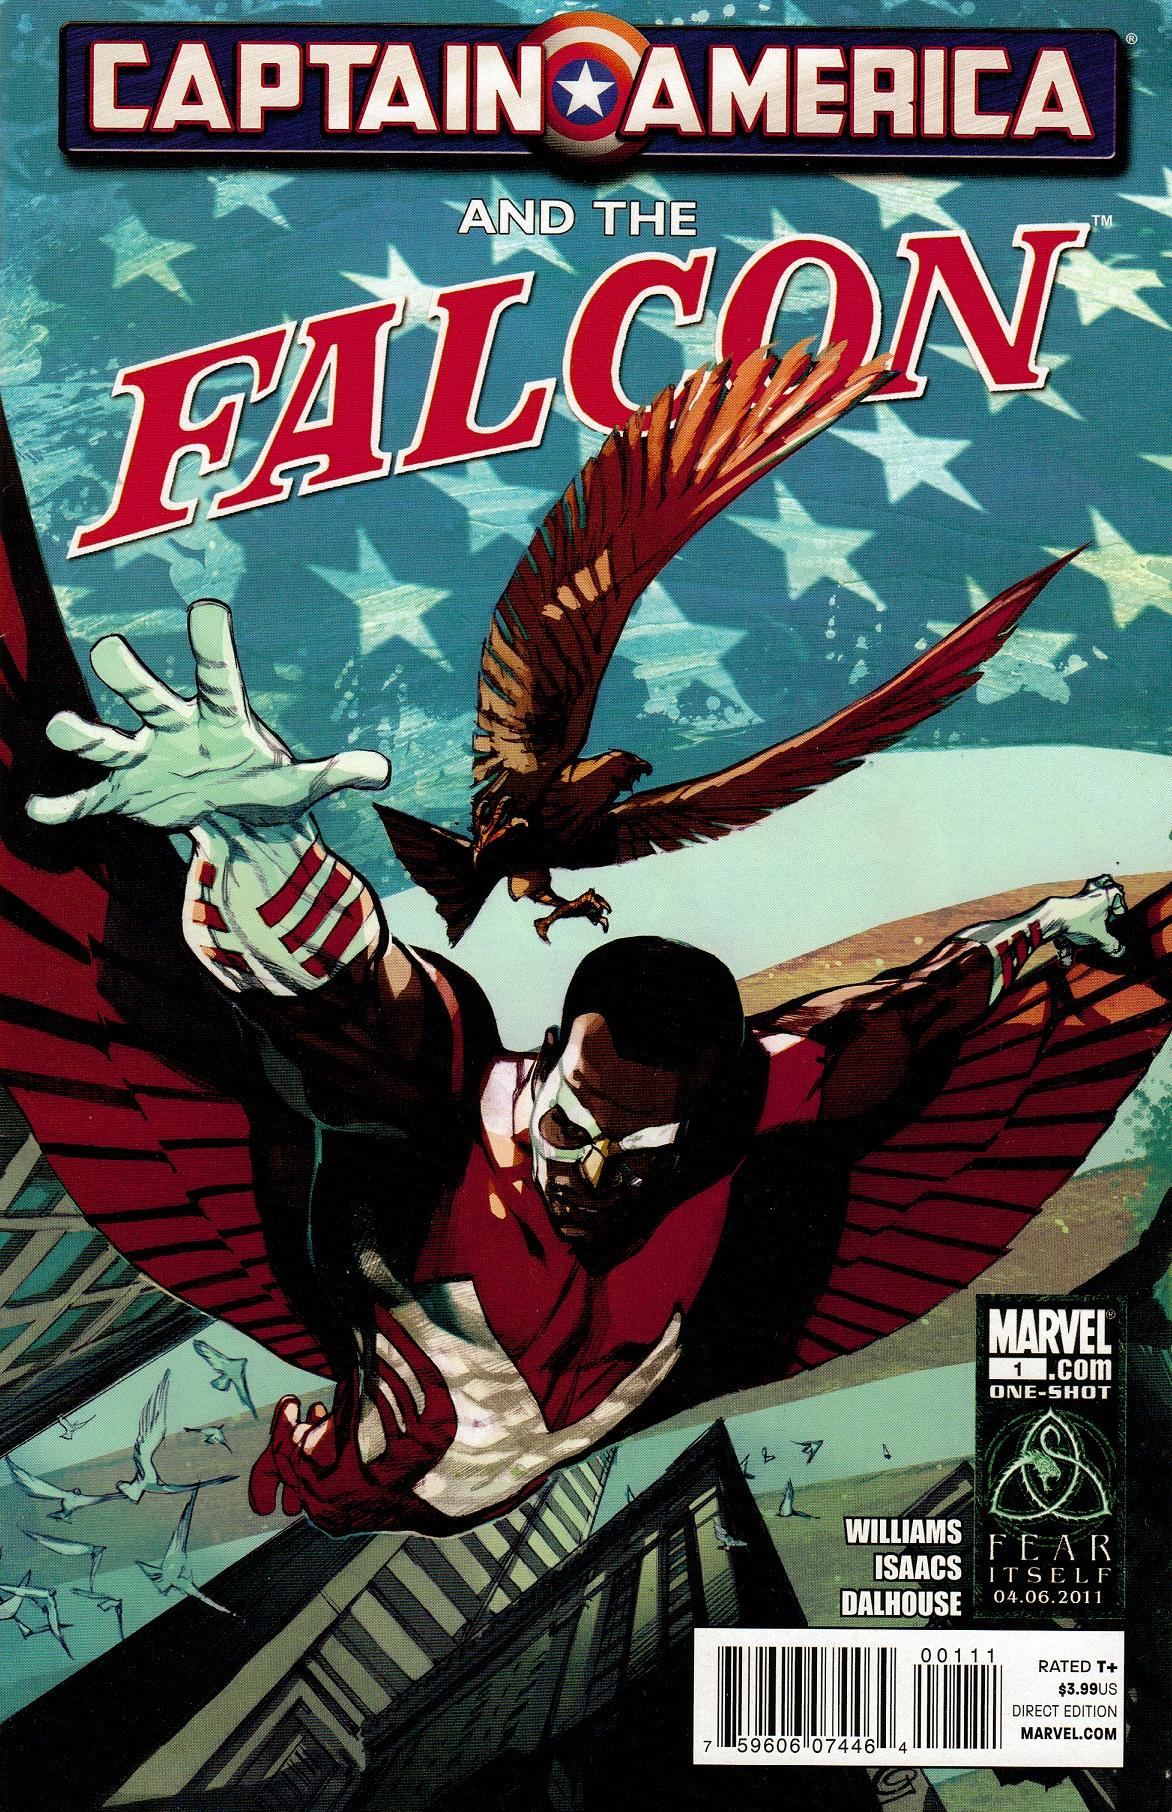 Captain America and Falcon Vol. 1 #1